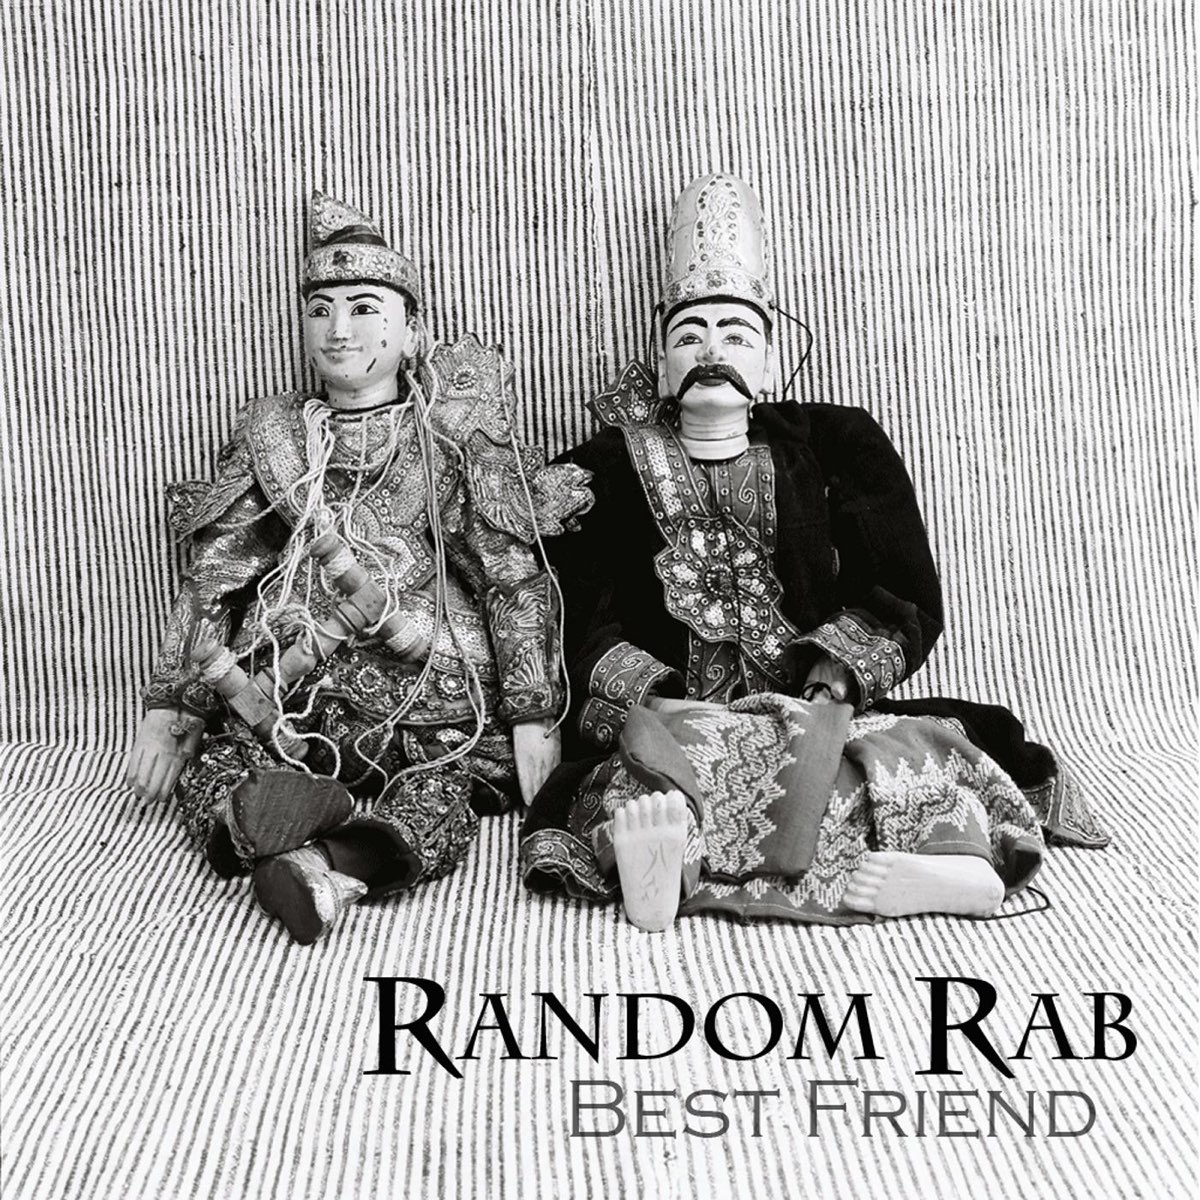 Random Rab. Random friends. Random Rab on magnificence.